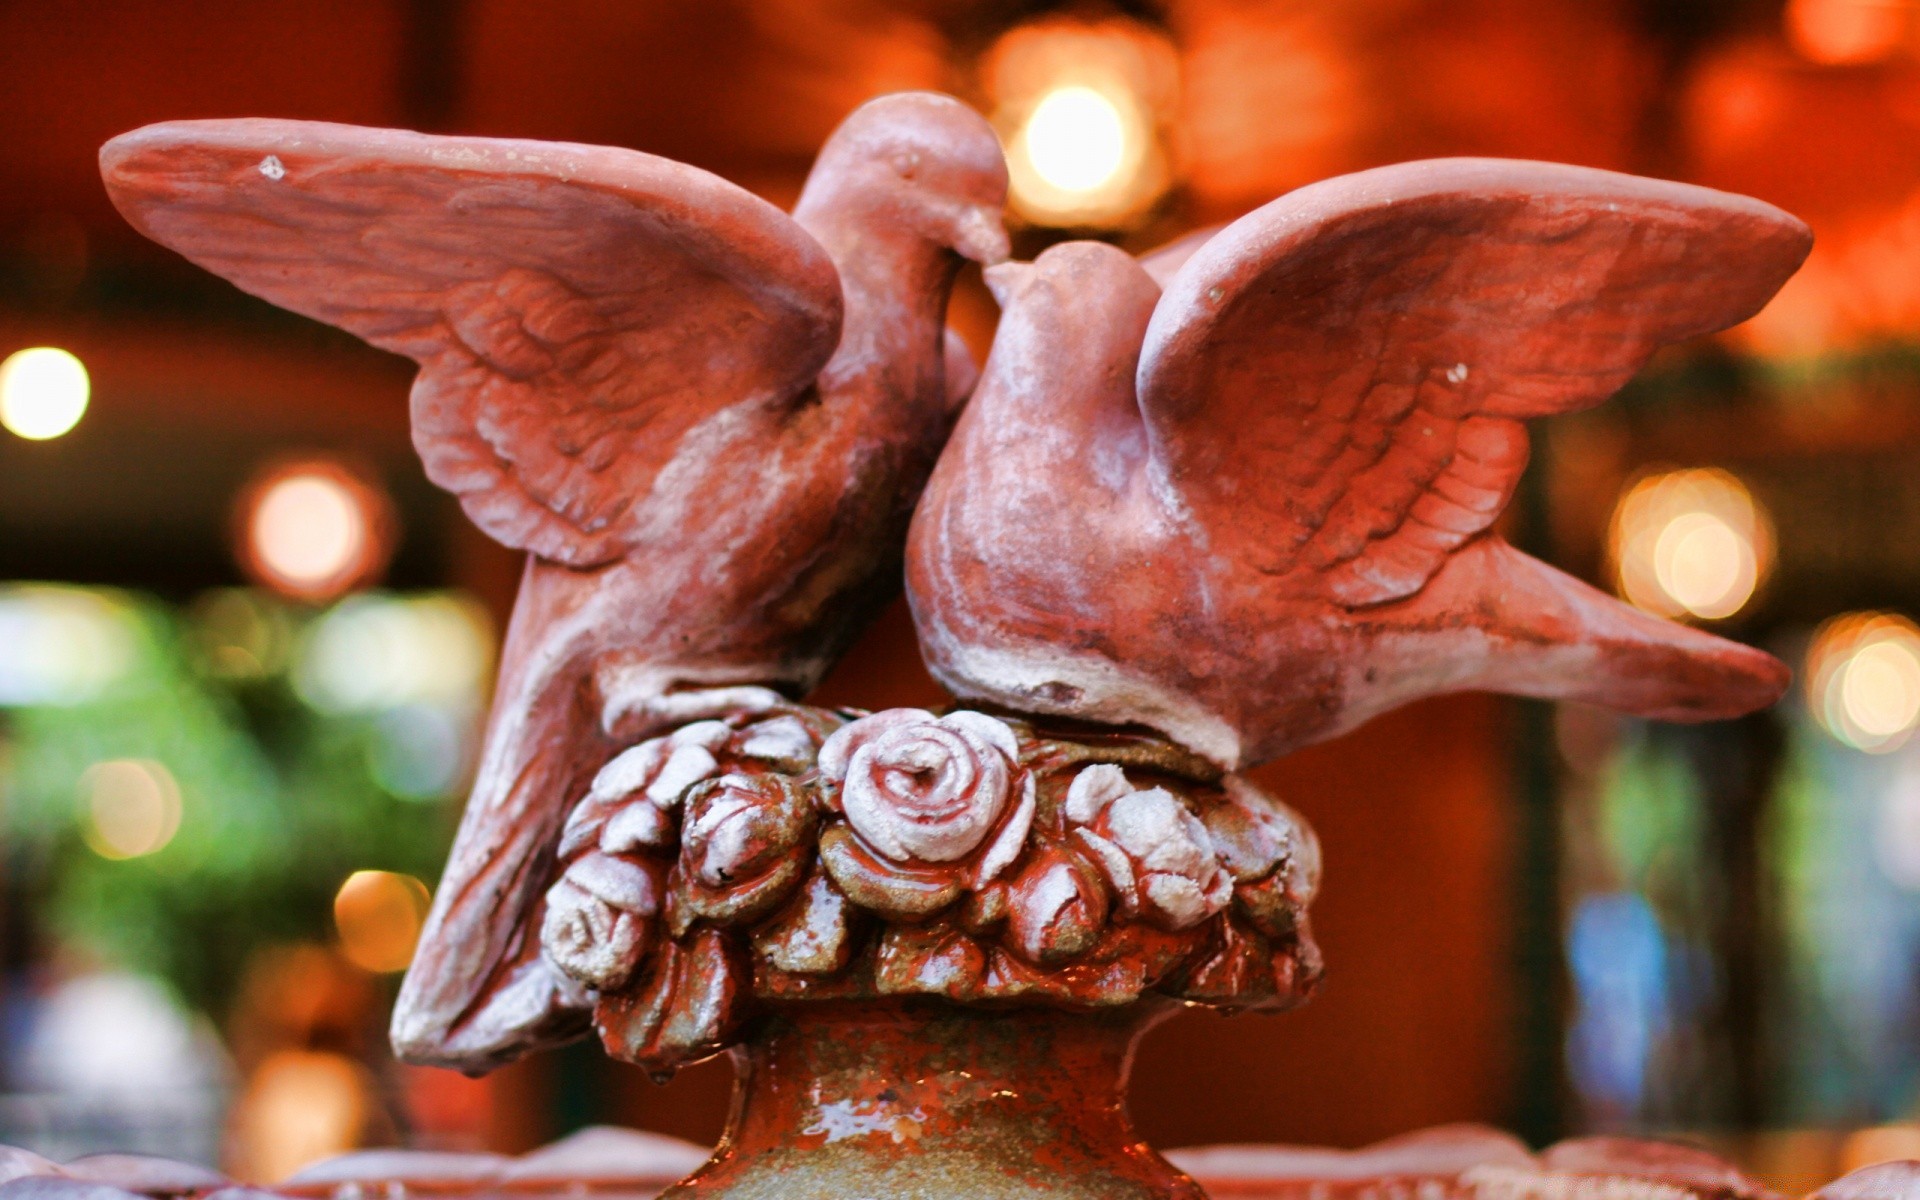 скульптуры керамический искусство рынок религия традиционные еда украшения глина статуя